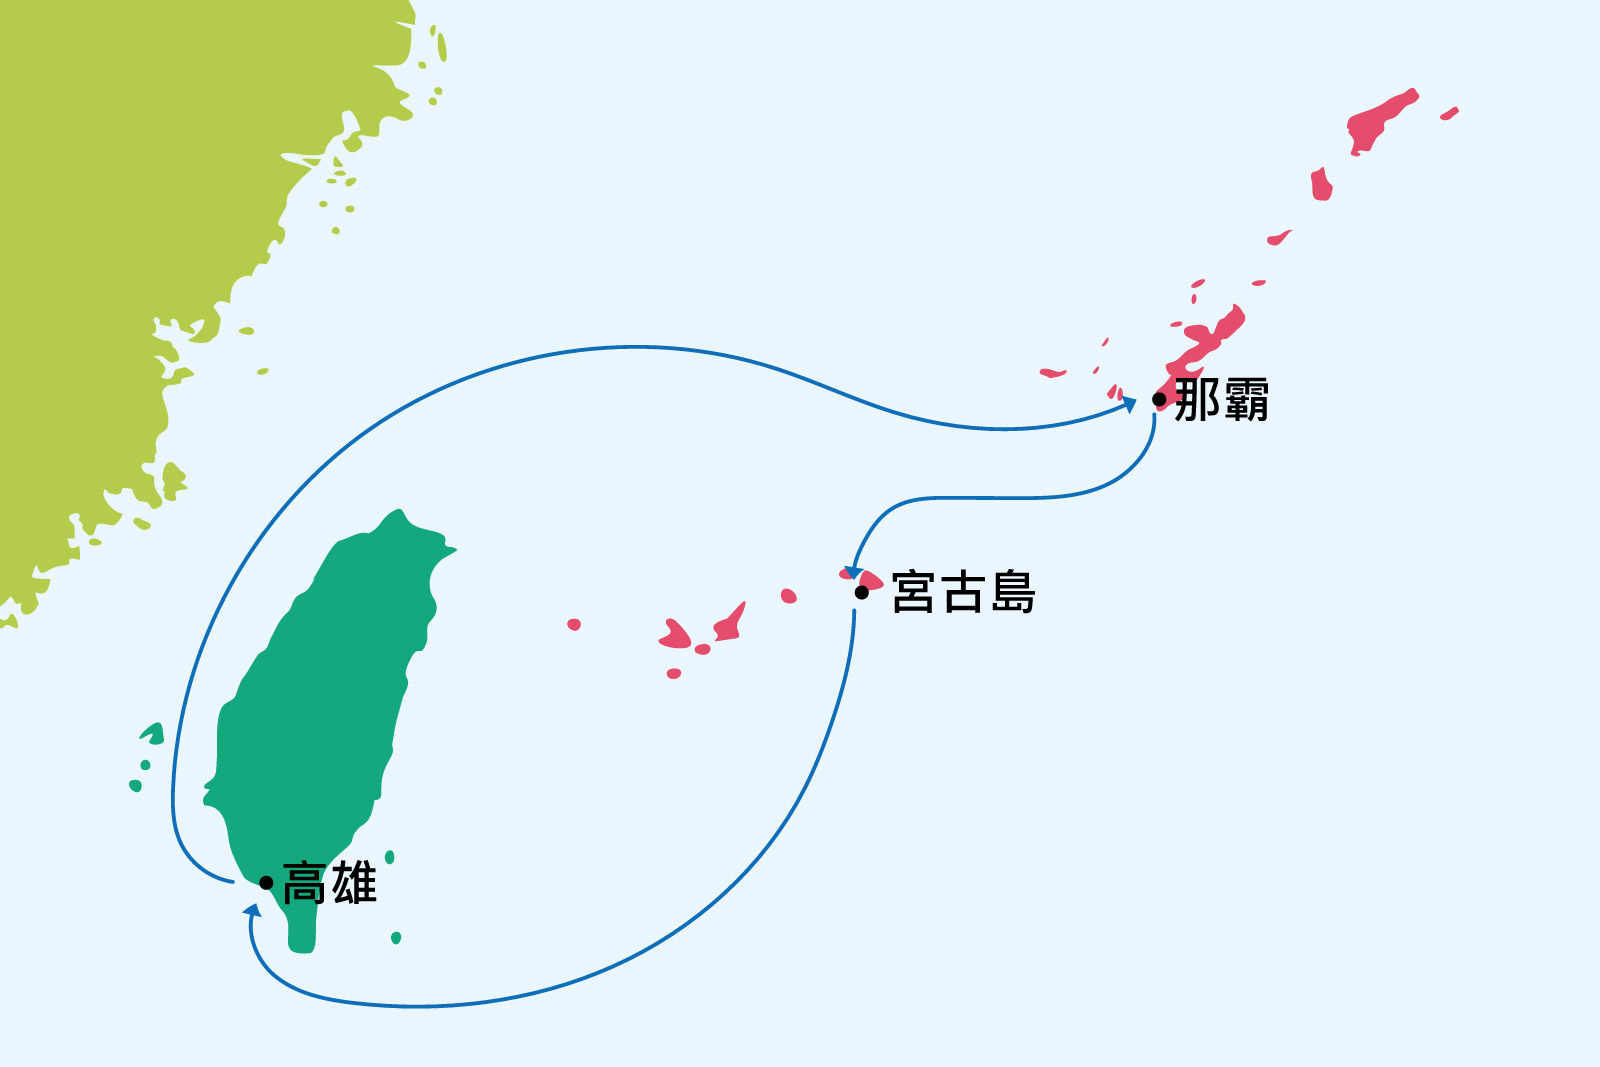 沖繩、石垣島地圖